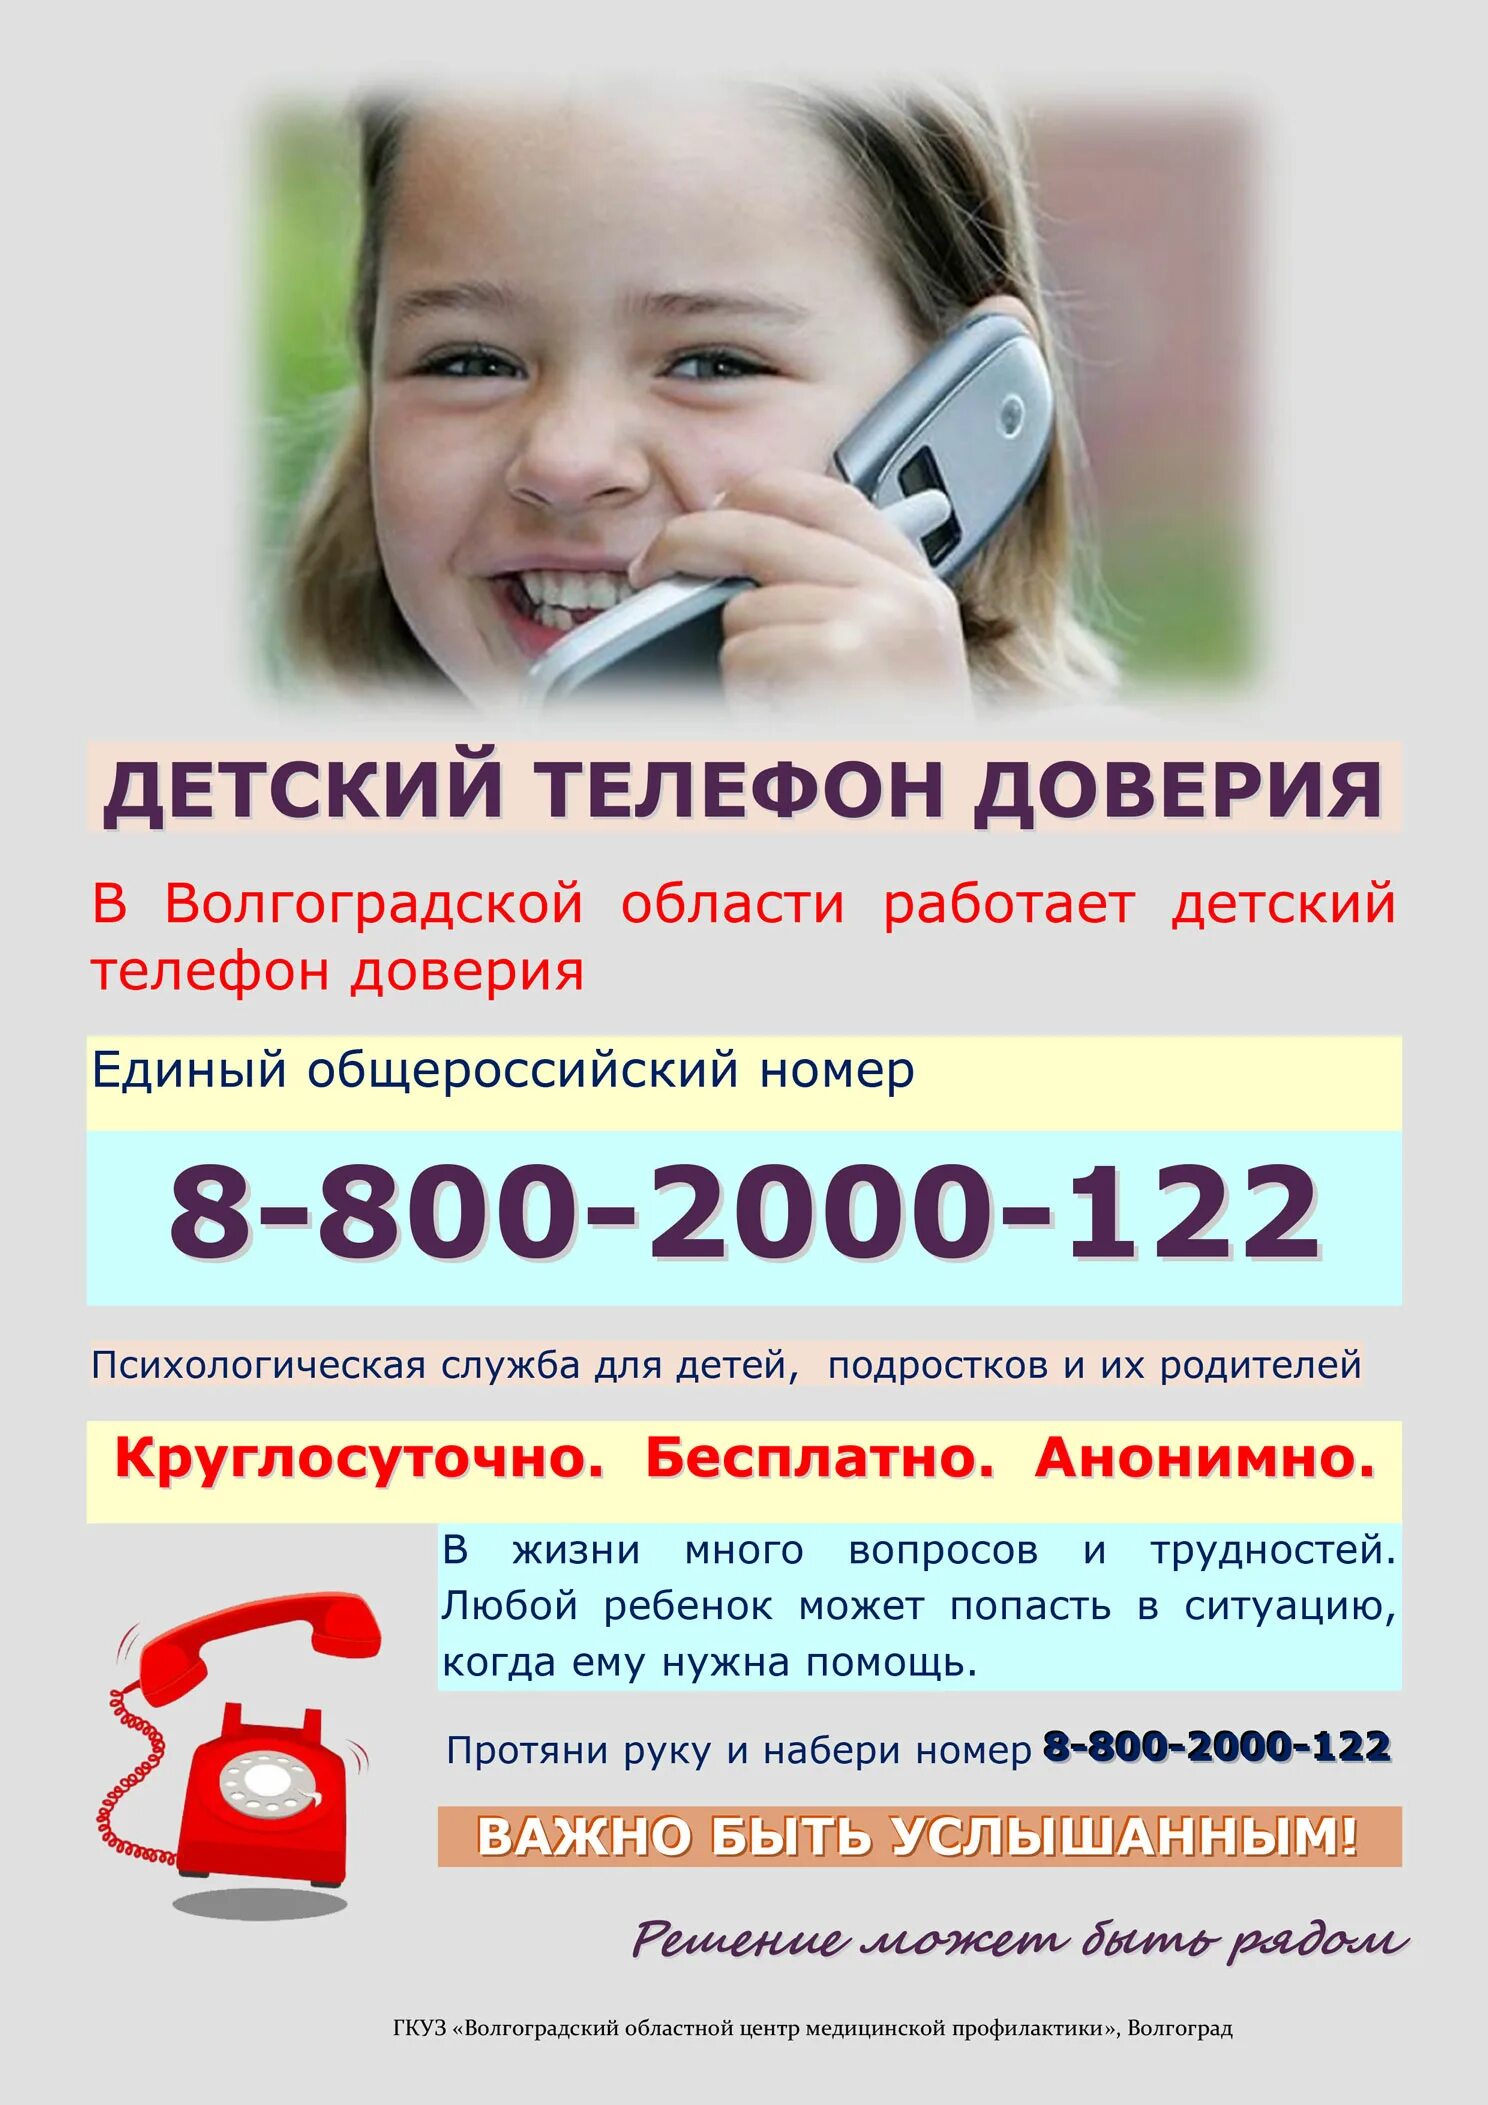 Телефон доверия. Детский телефон доверия. Телефон доверия для детей подростков и их родителей. Номер телефона доверия для детей.